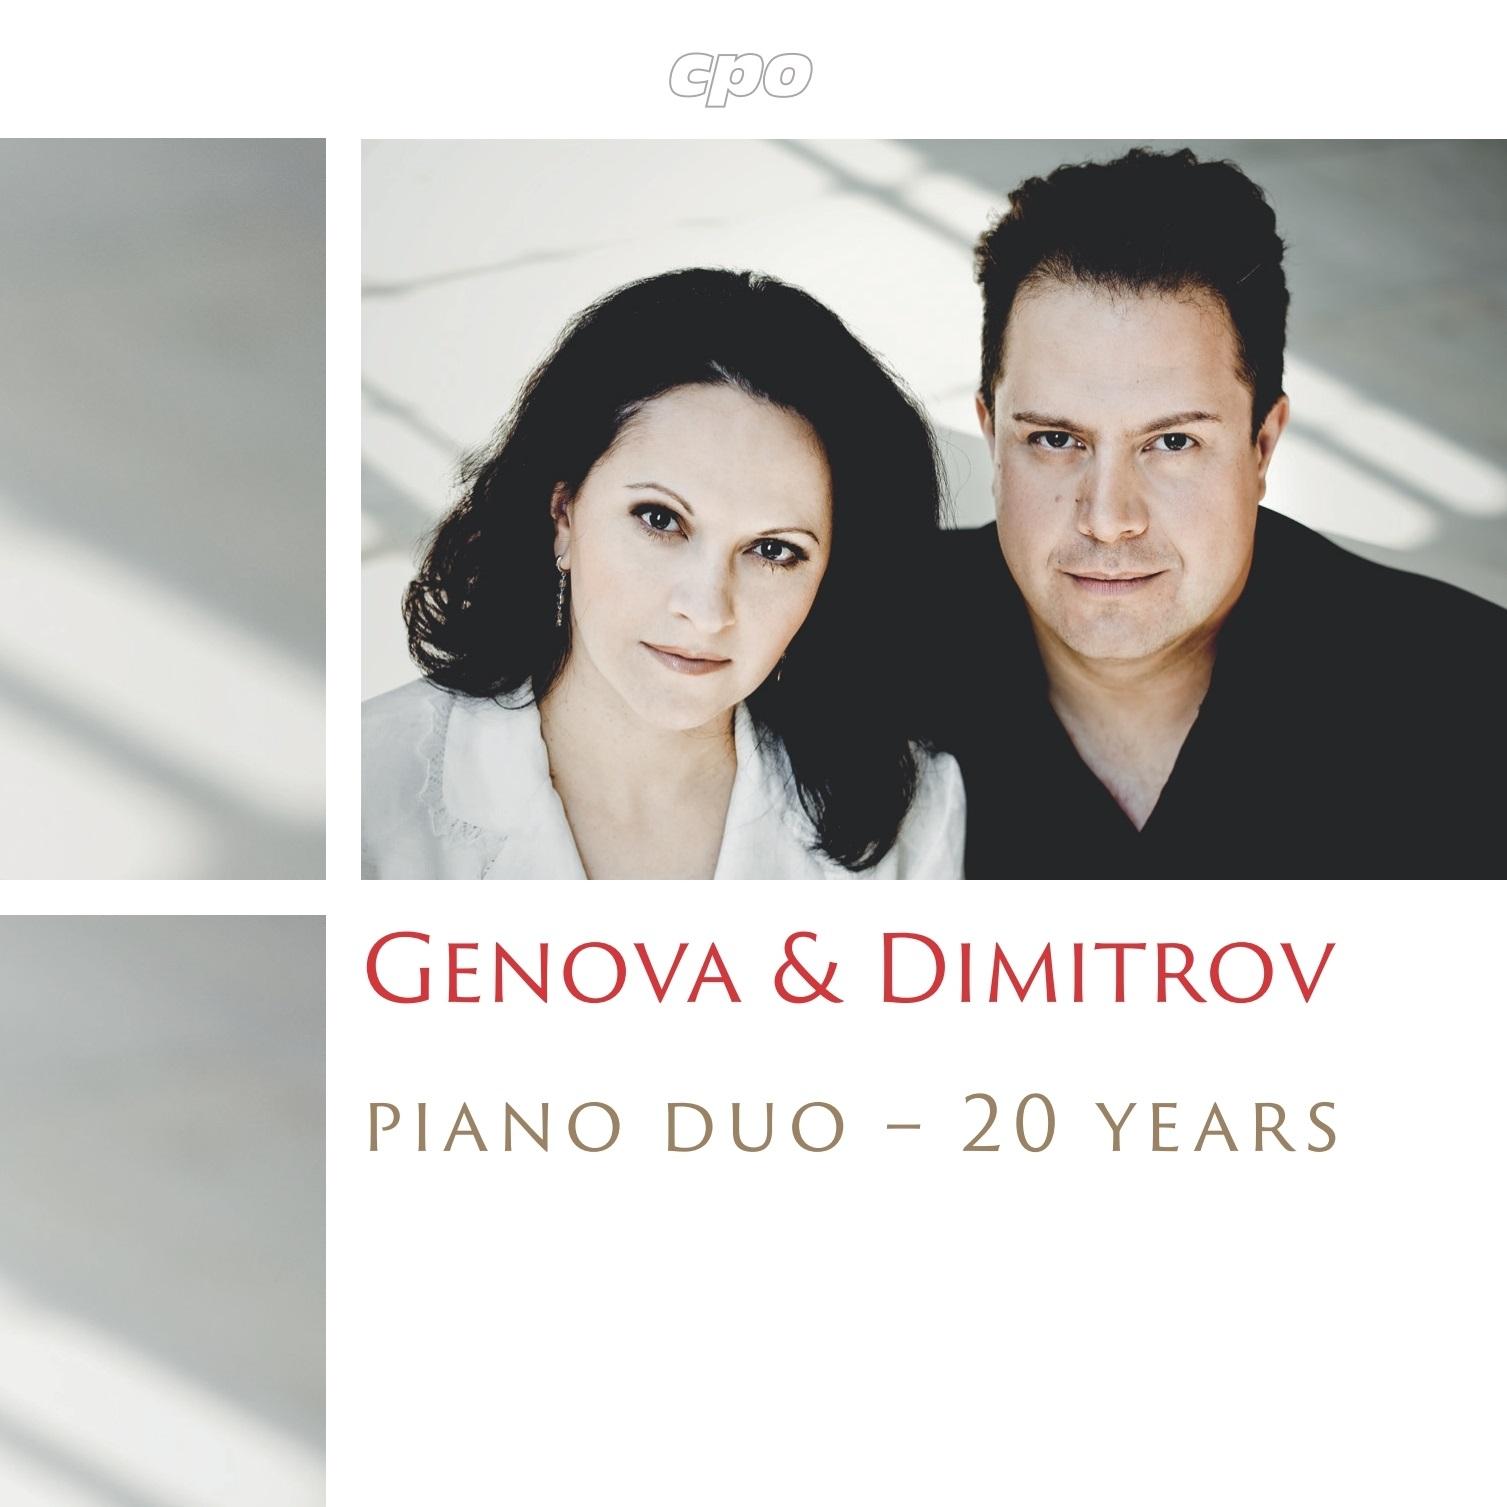 CD "20 Years Genova & Dimitrov Piano Duo" (cpo AGLD 2015) | Cover